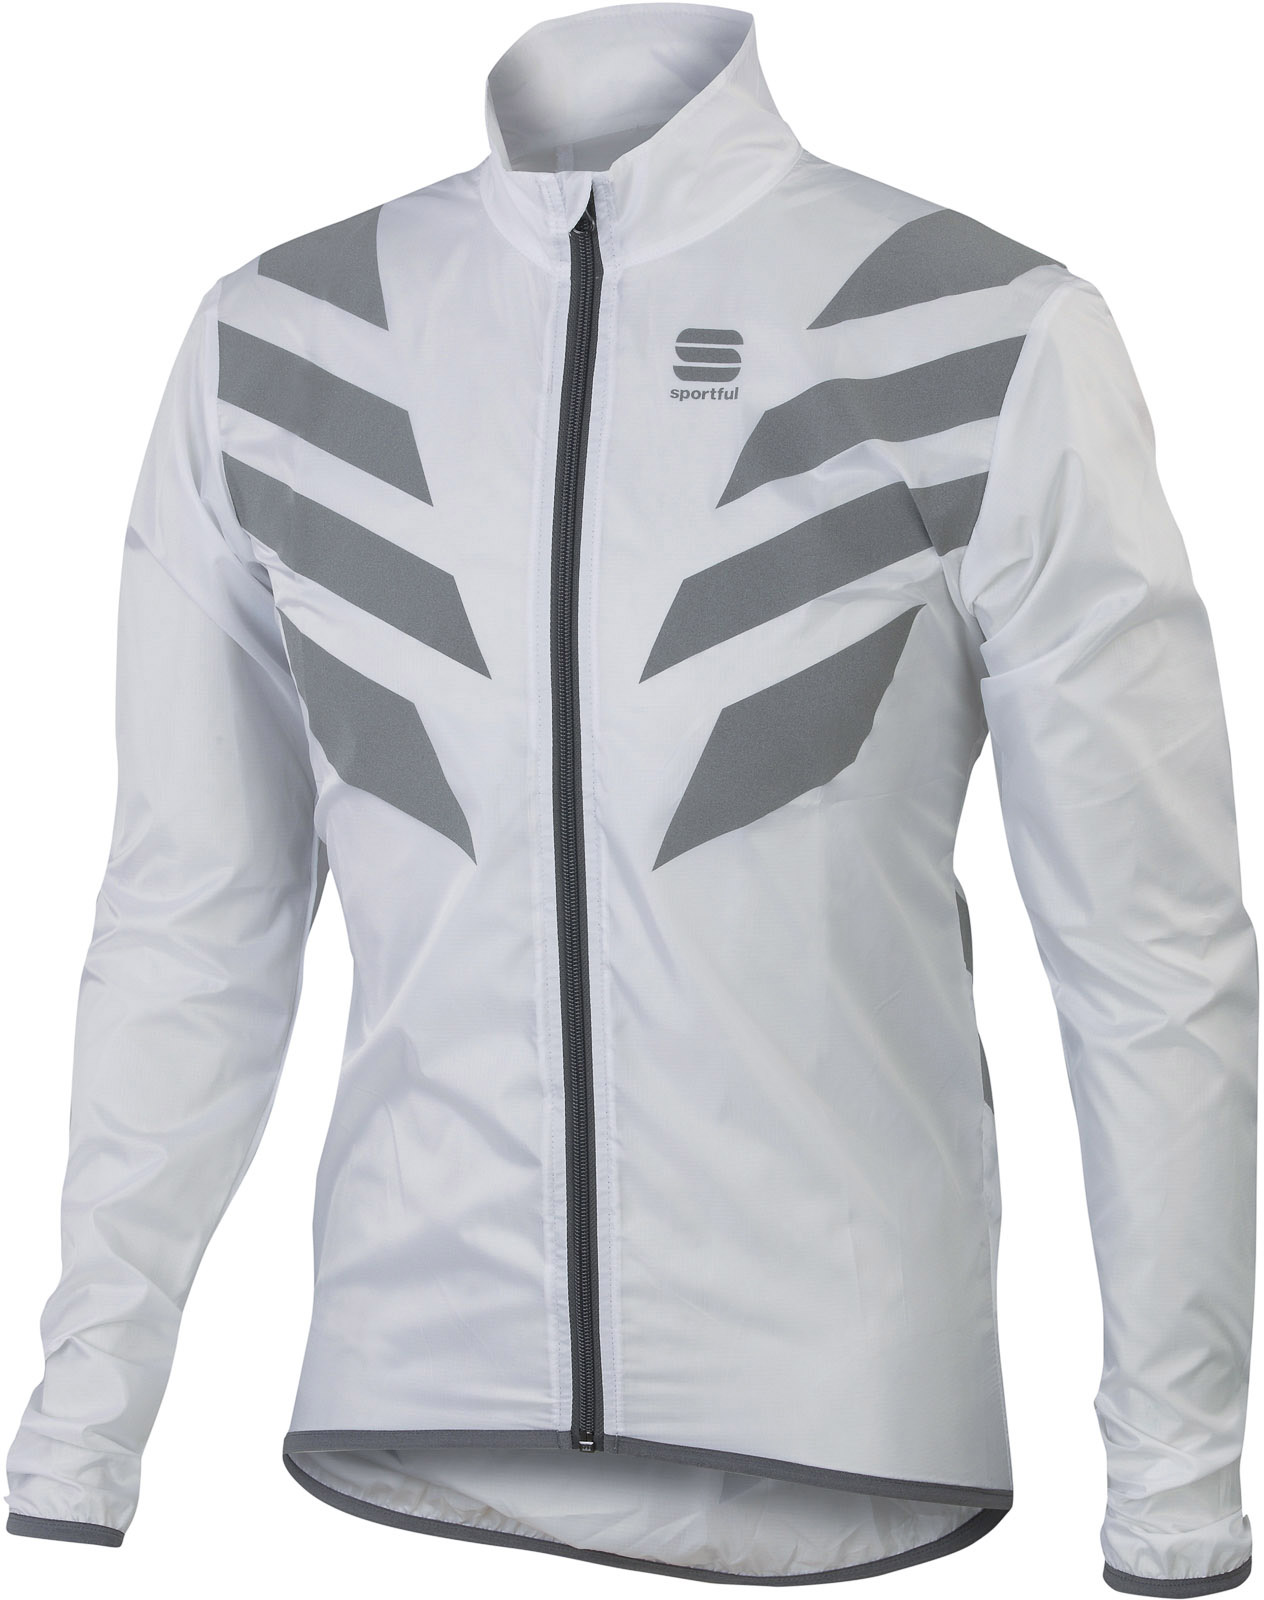 Unisex jacket